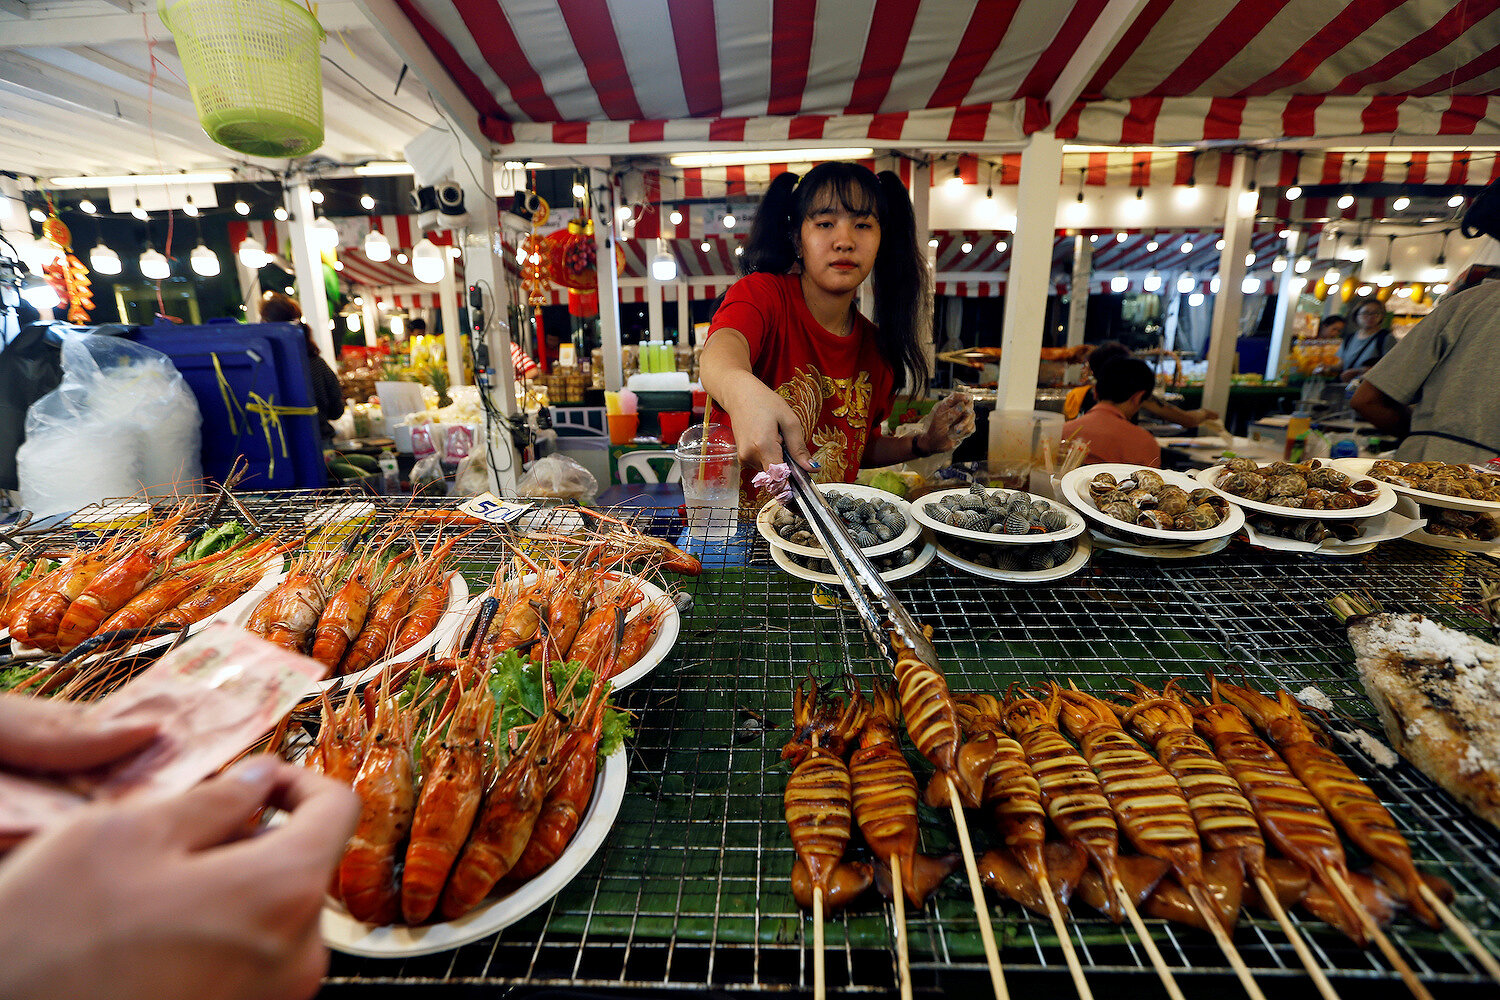 <p>Женщина продает морепродукты на временном ночном рынке, организованном специально в честь празднования китайского Нового года в Бангкоке (Таиланд)</p>

<p>&nbsp;</p>